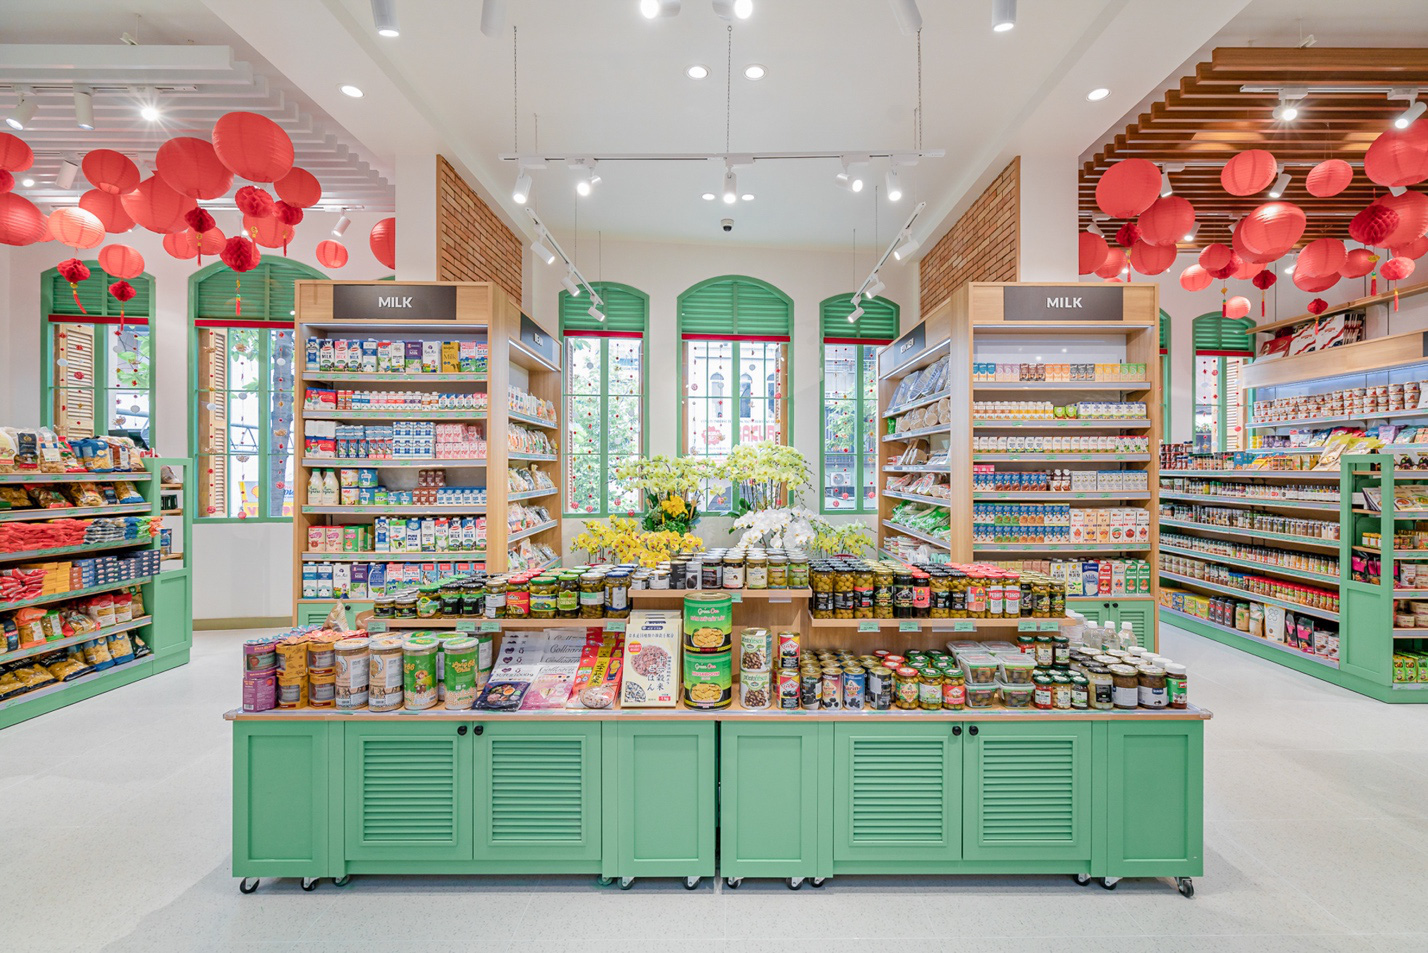 Chuỗi siêu thị Roots – Organic Store and Juice Bar chính thức khai trương - Ảnh 2.